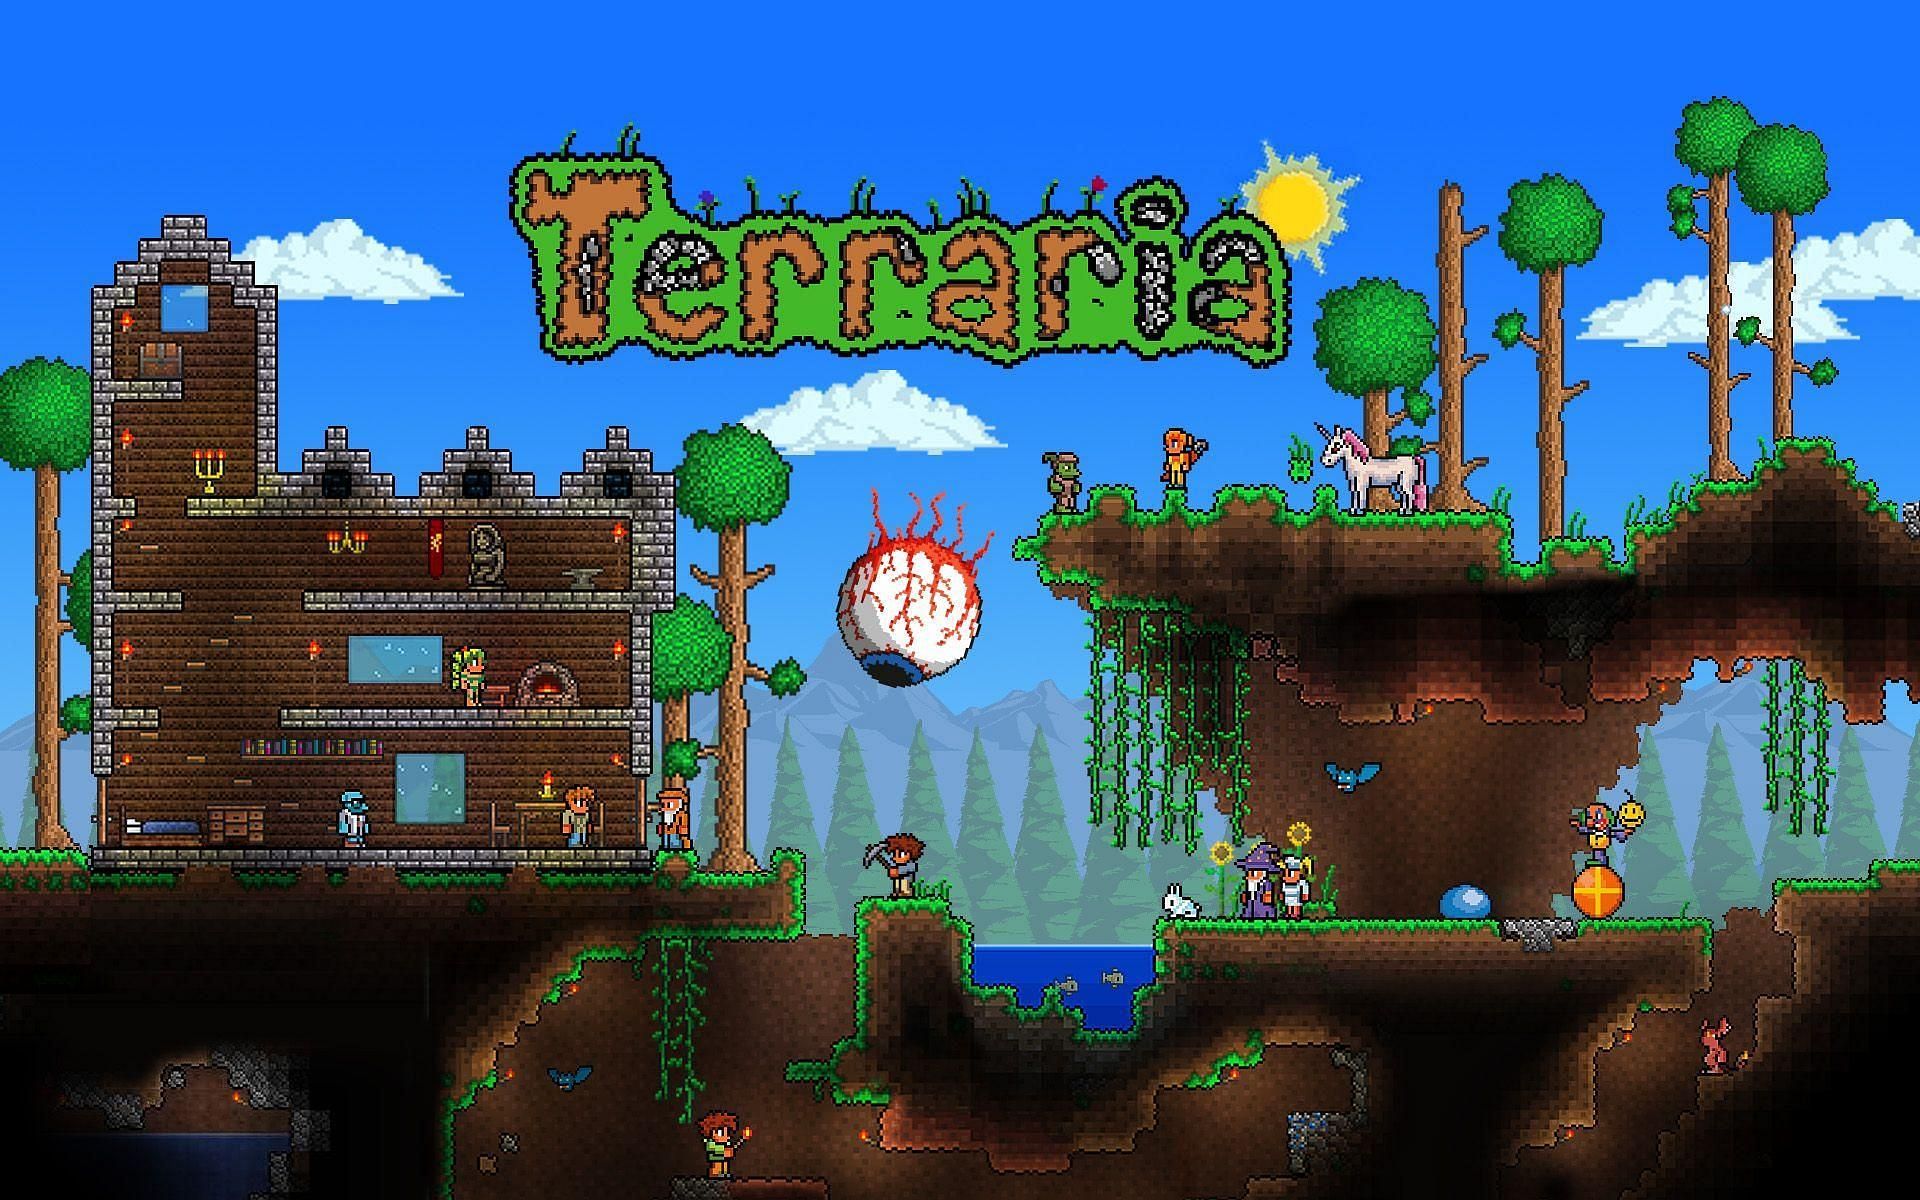 Terraria - The new trendy sandbox on internet (Image via terraria)